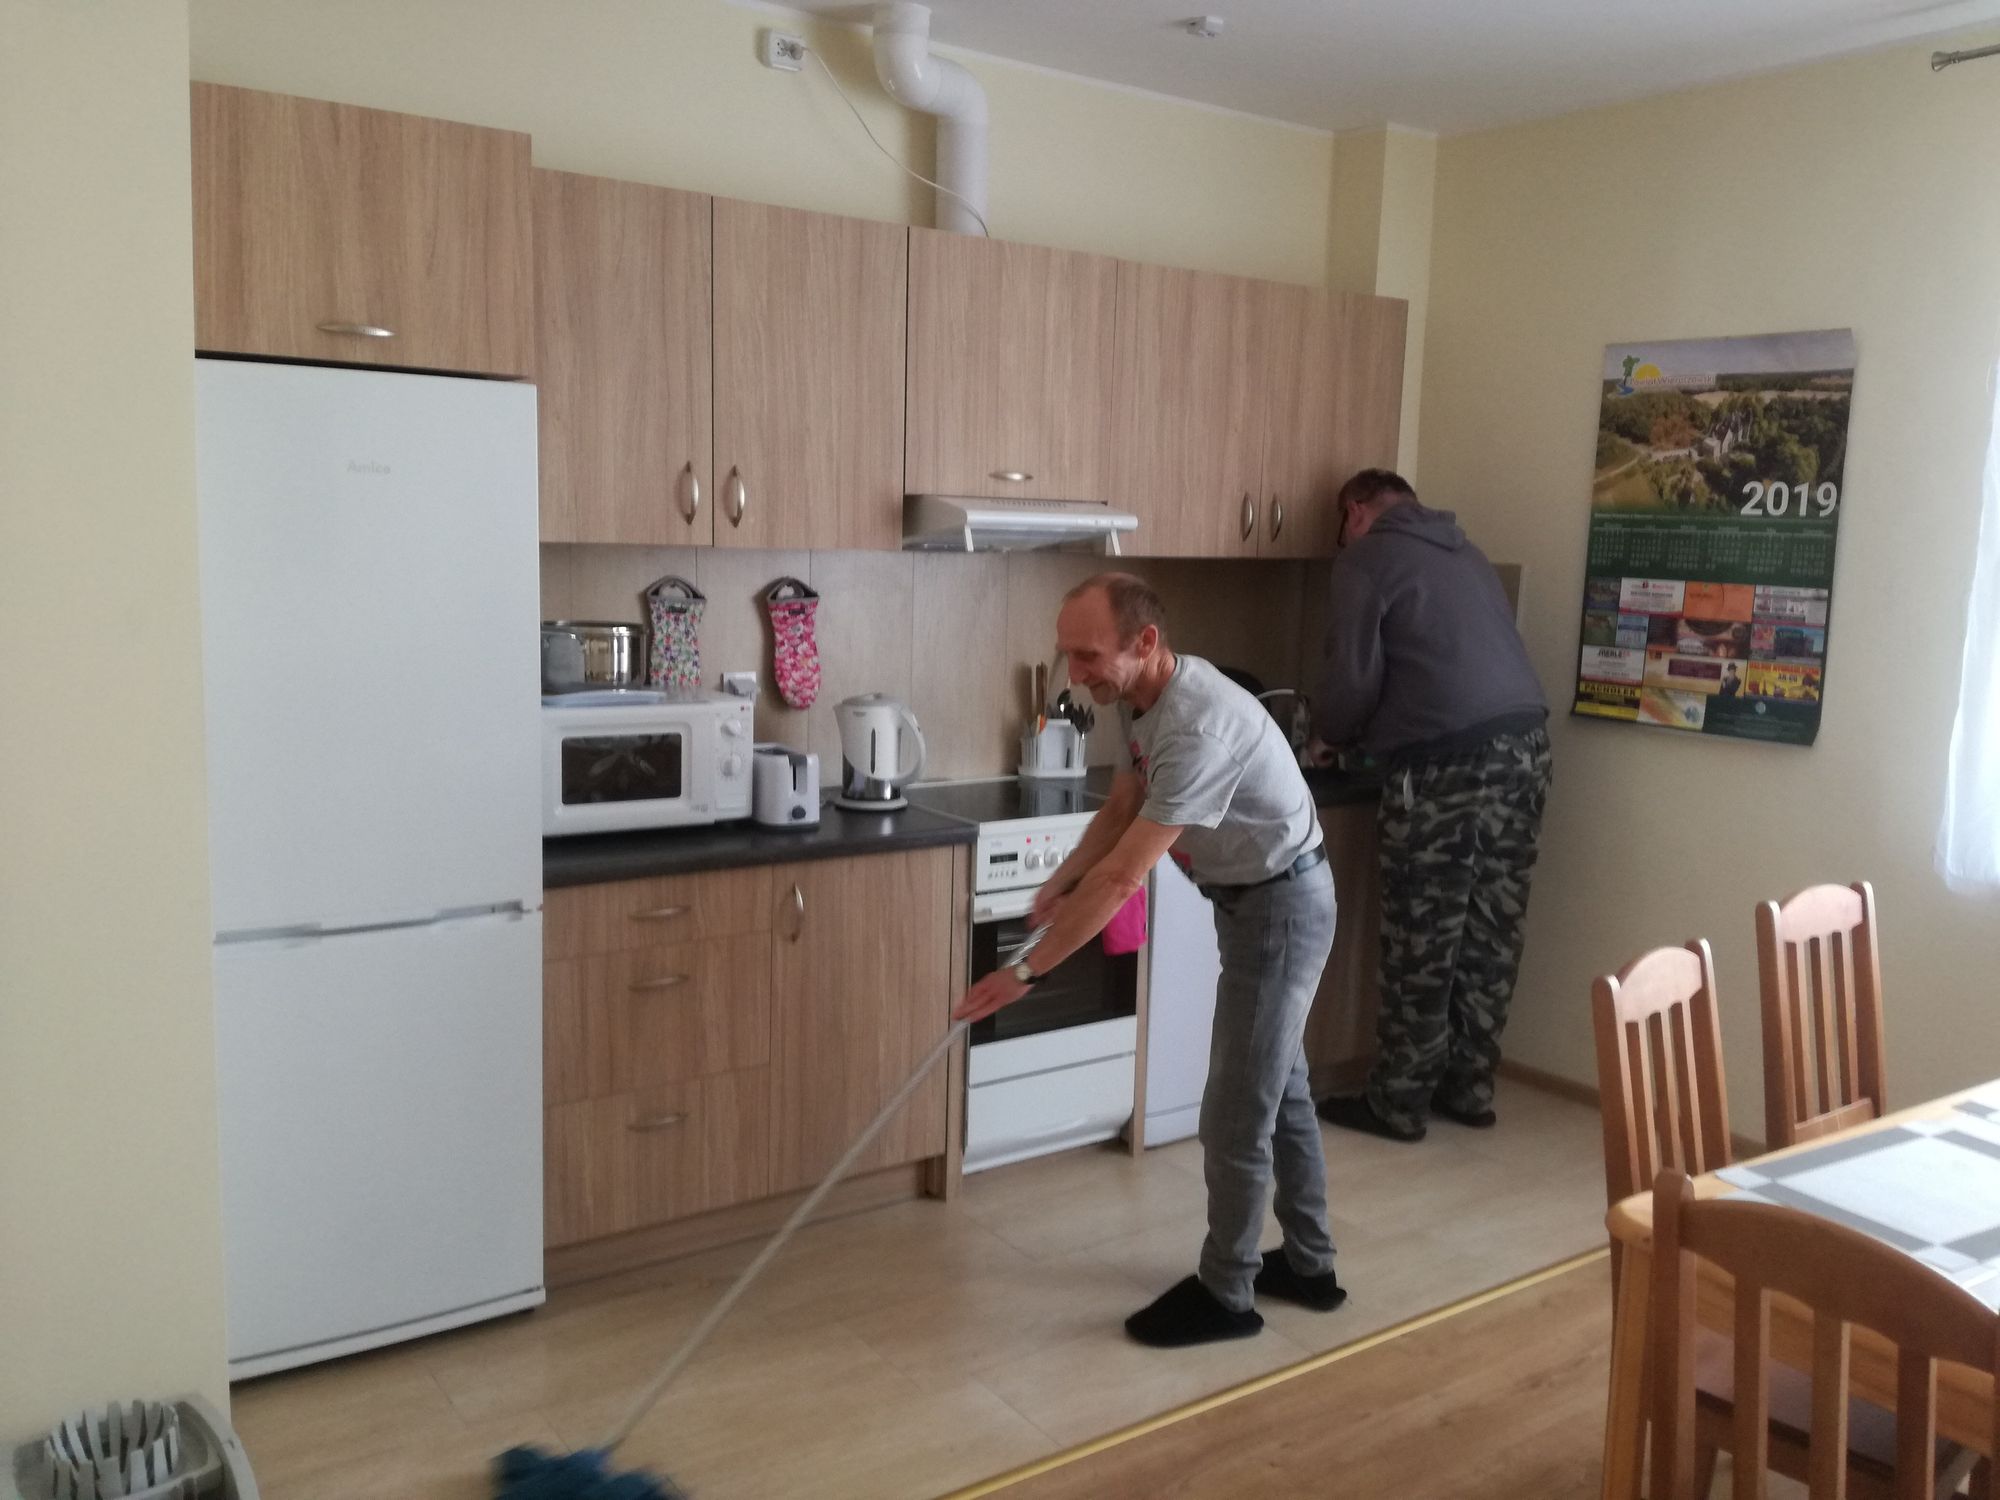 Dwaj mieszkańcy mieszkań wspomaganych podczas prac domowych, jeden zamiata podłogę w kuchni, drugi zmywa naczynia